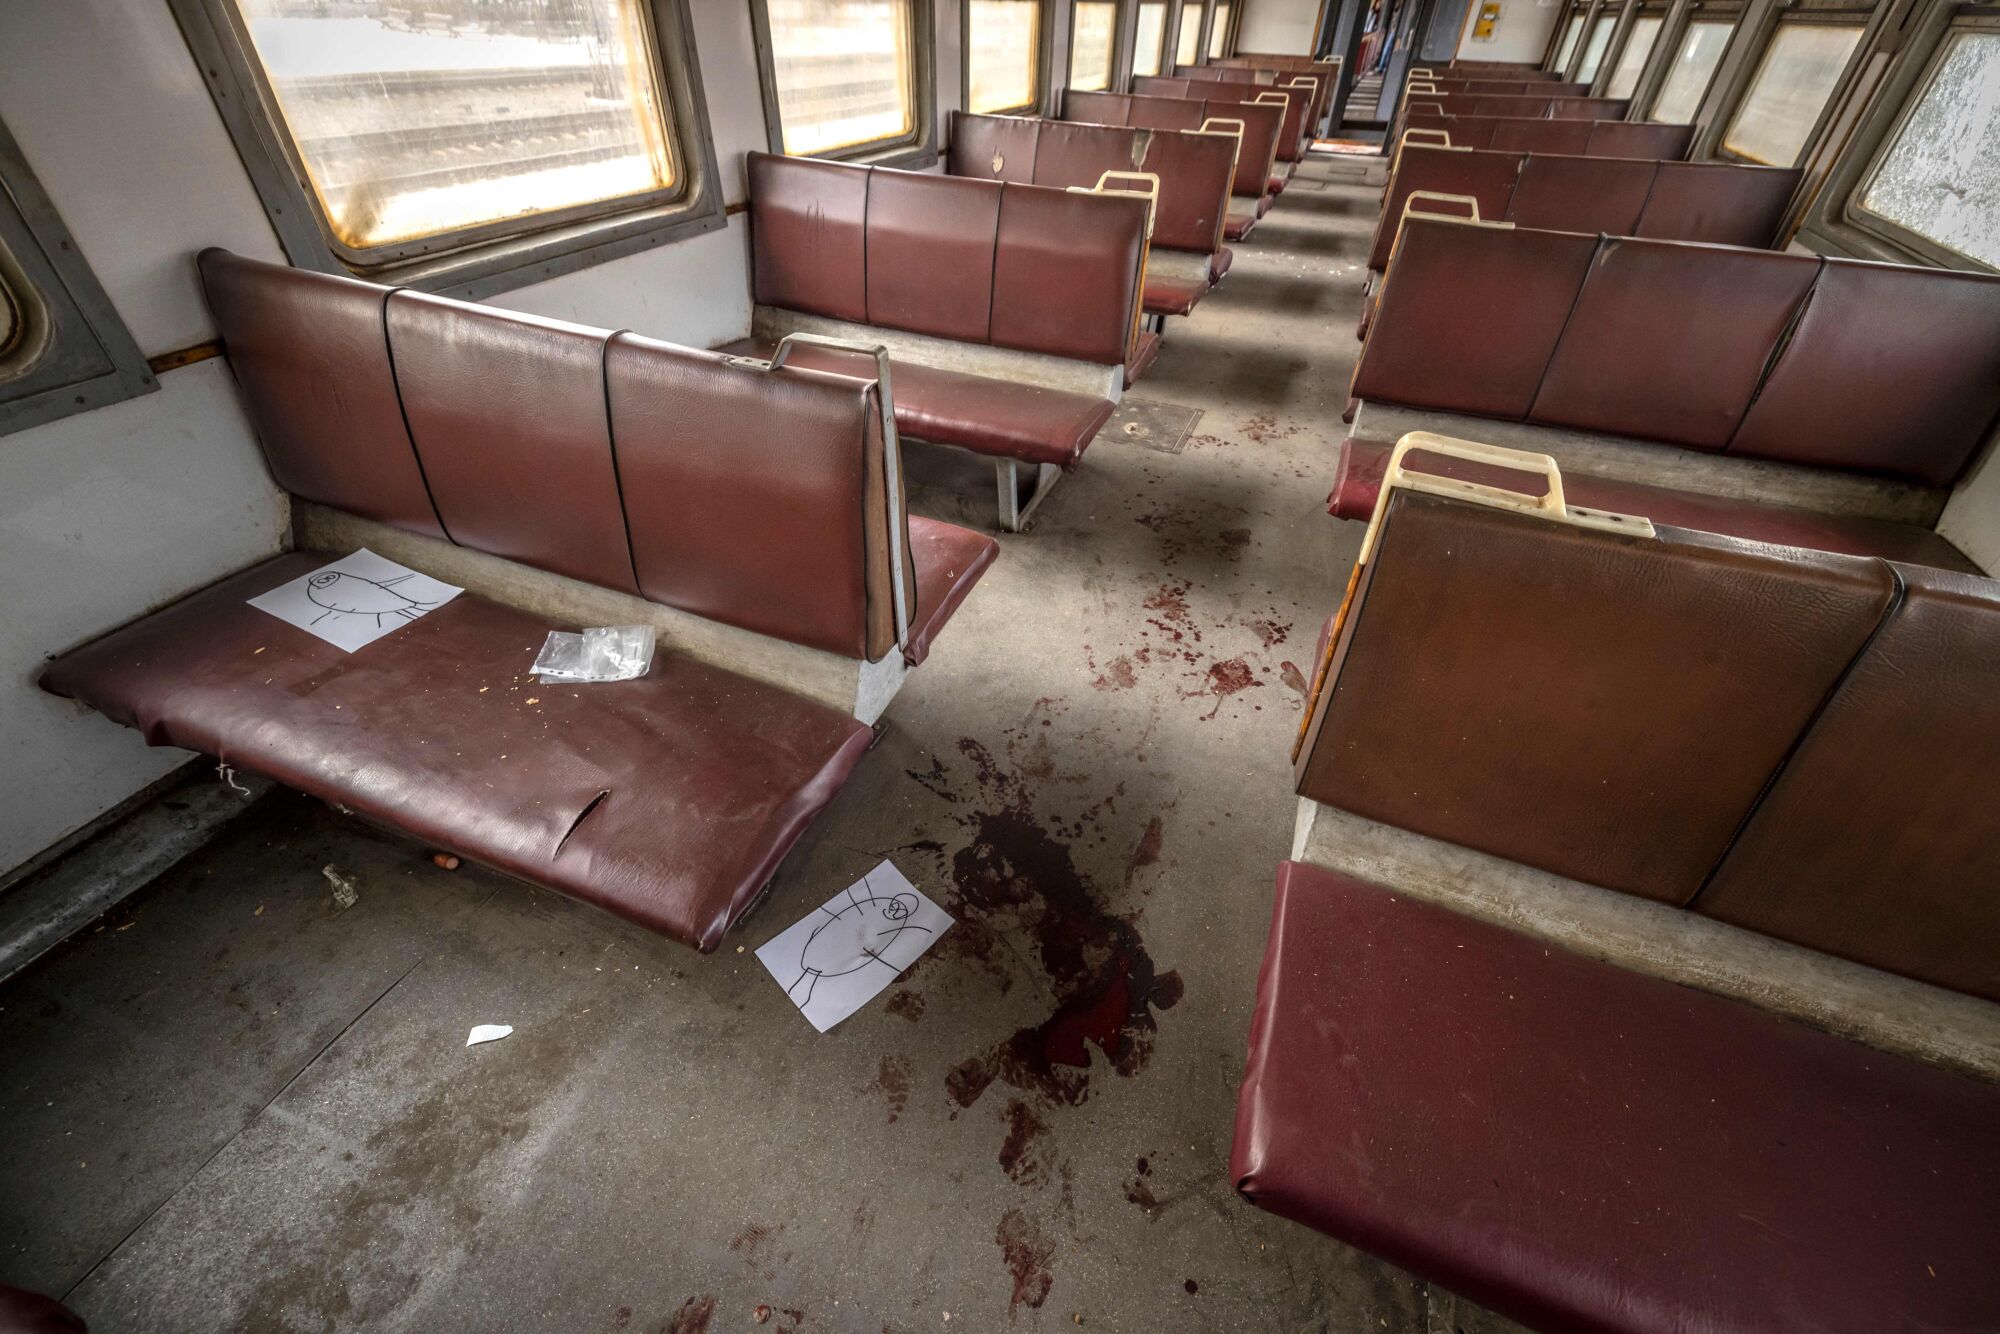 Splatters of blood in a train car